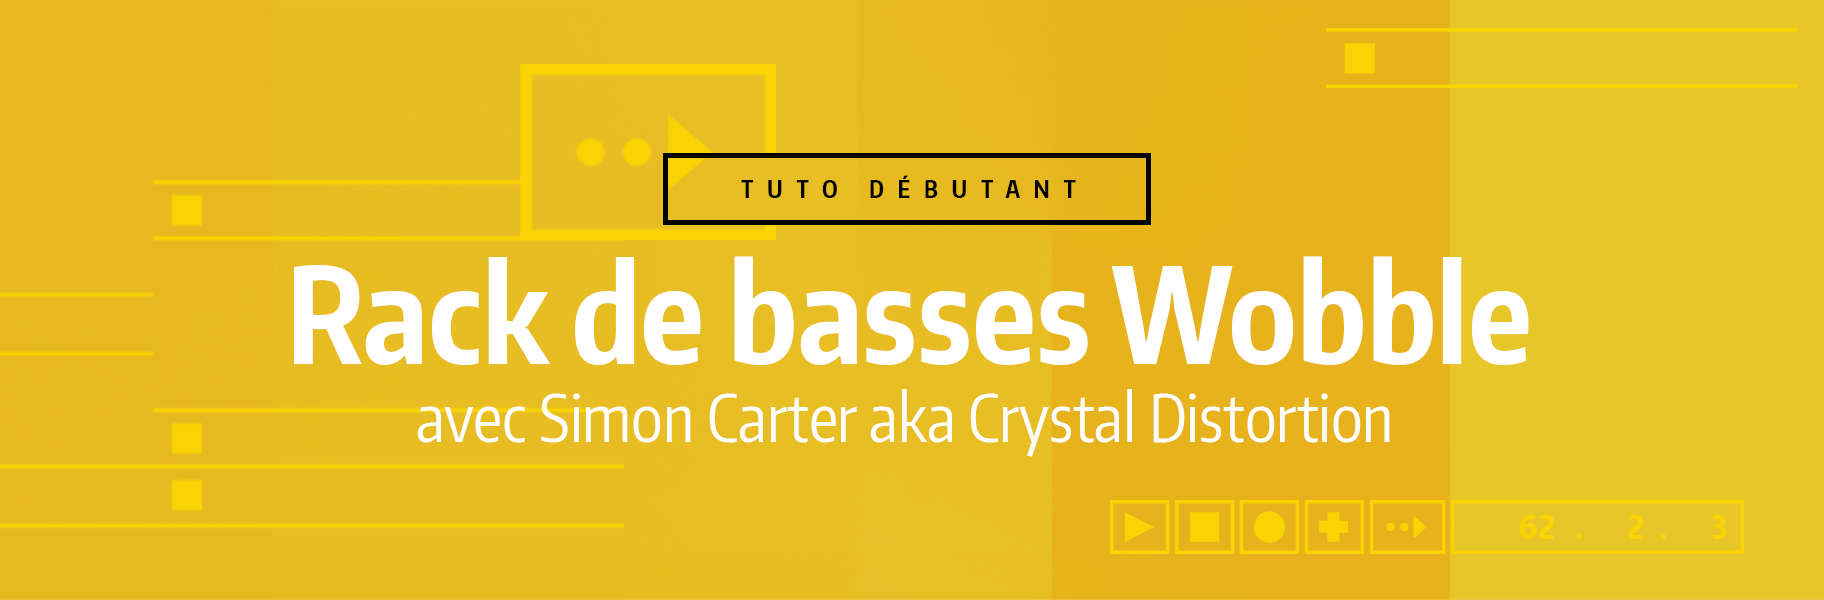 Tutoriel Ableton Live - Rack de basses Wobble Crystal Distortion